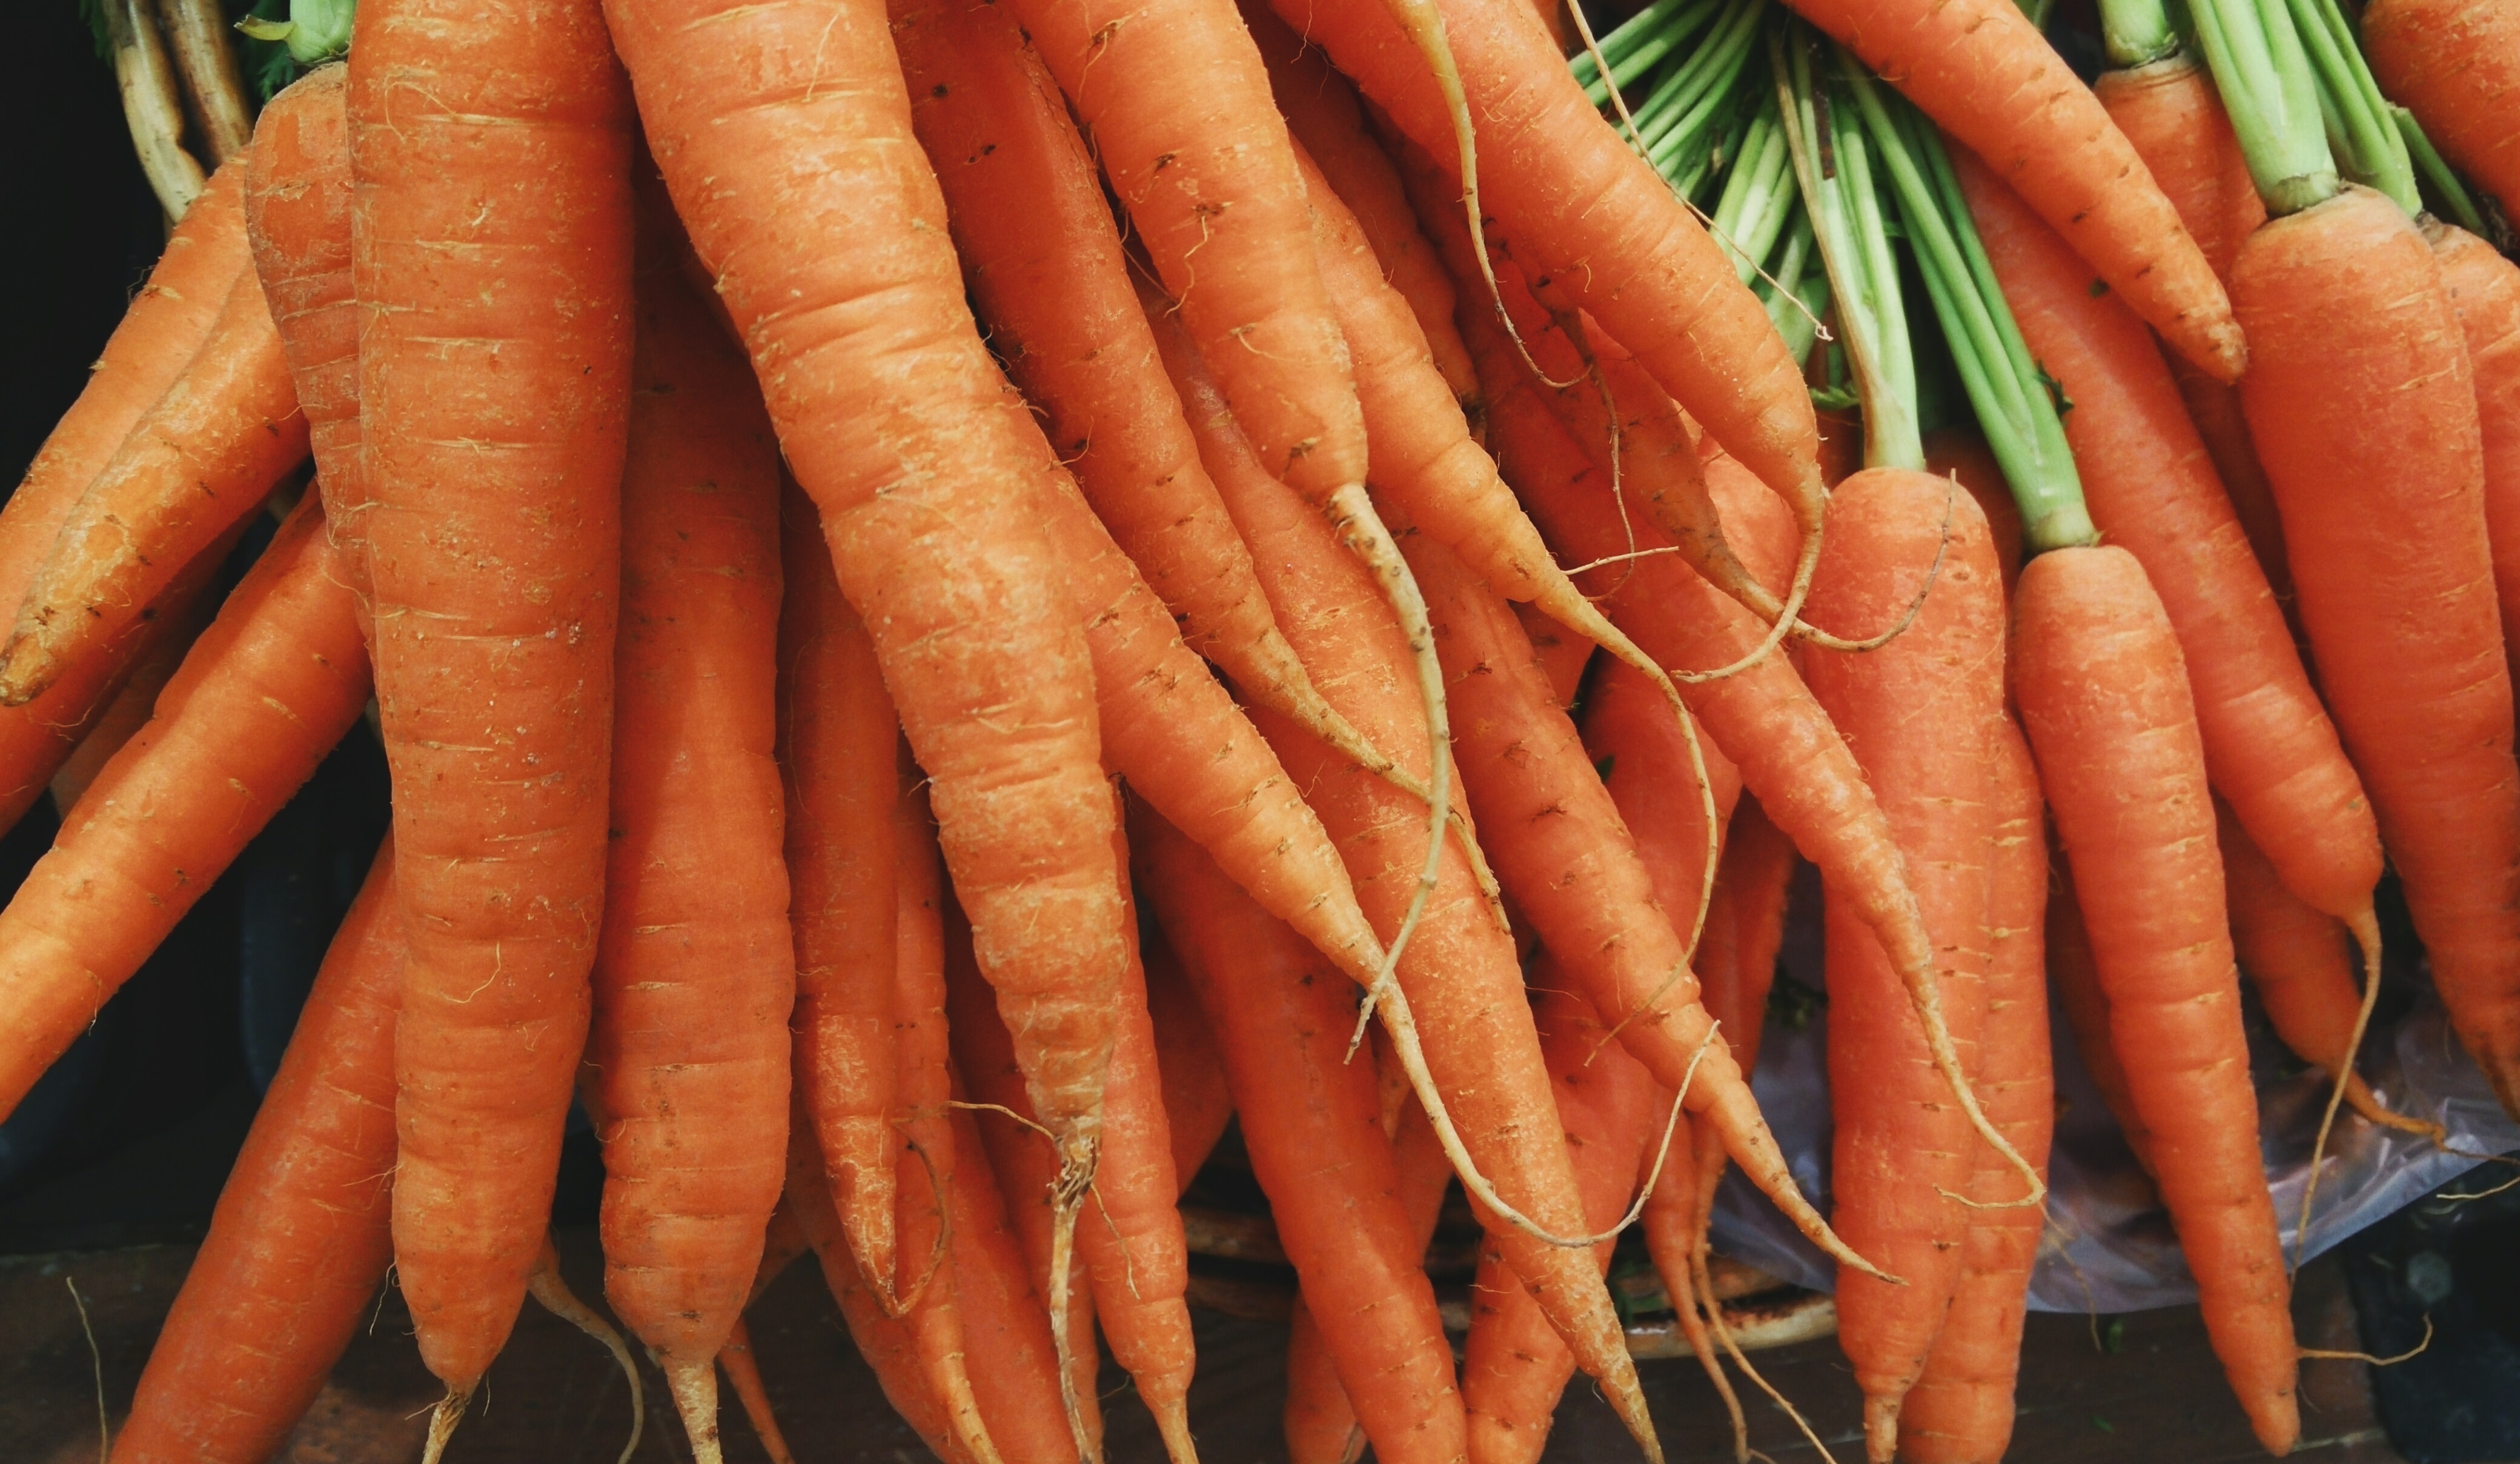 Las zanahorias son ricas en betacarotenos, vitamina K y antioxidantes, entre otros beneficios. Son muy utilizadas para todo tipo de platillos alrededor del mundo. (Foto Prensa Libre: Unsplash).